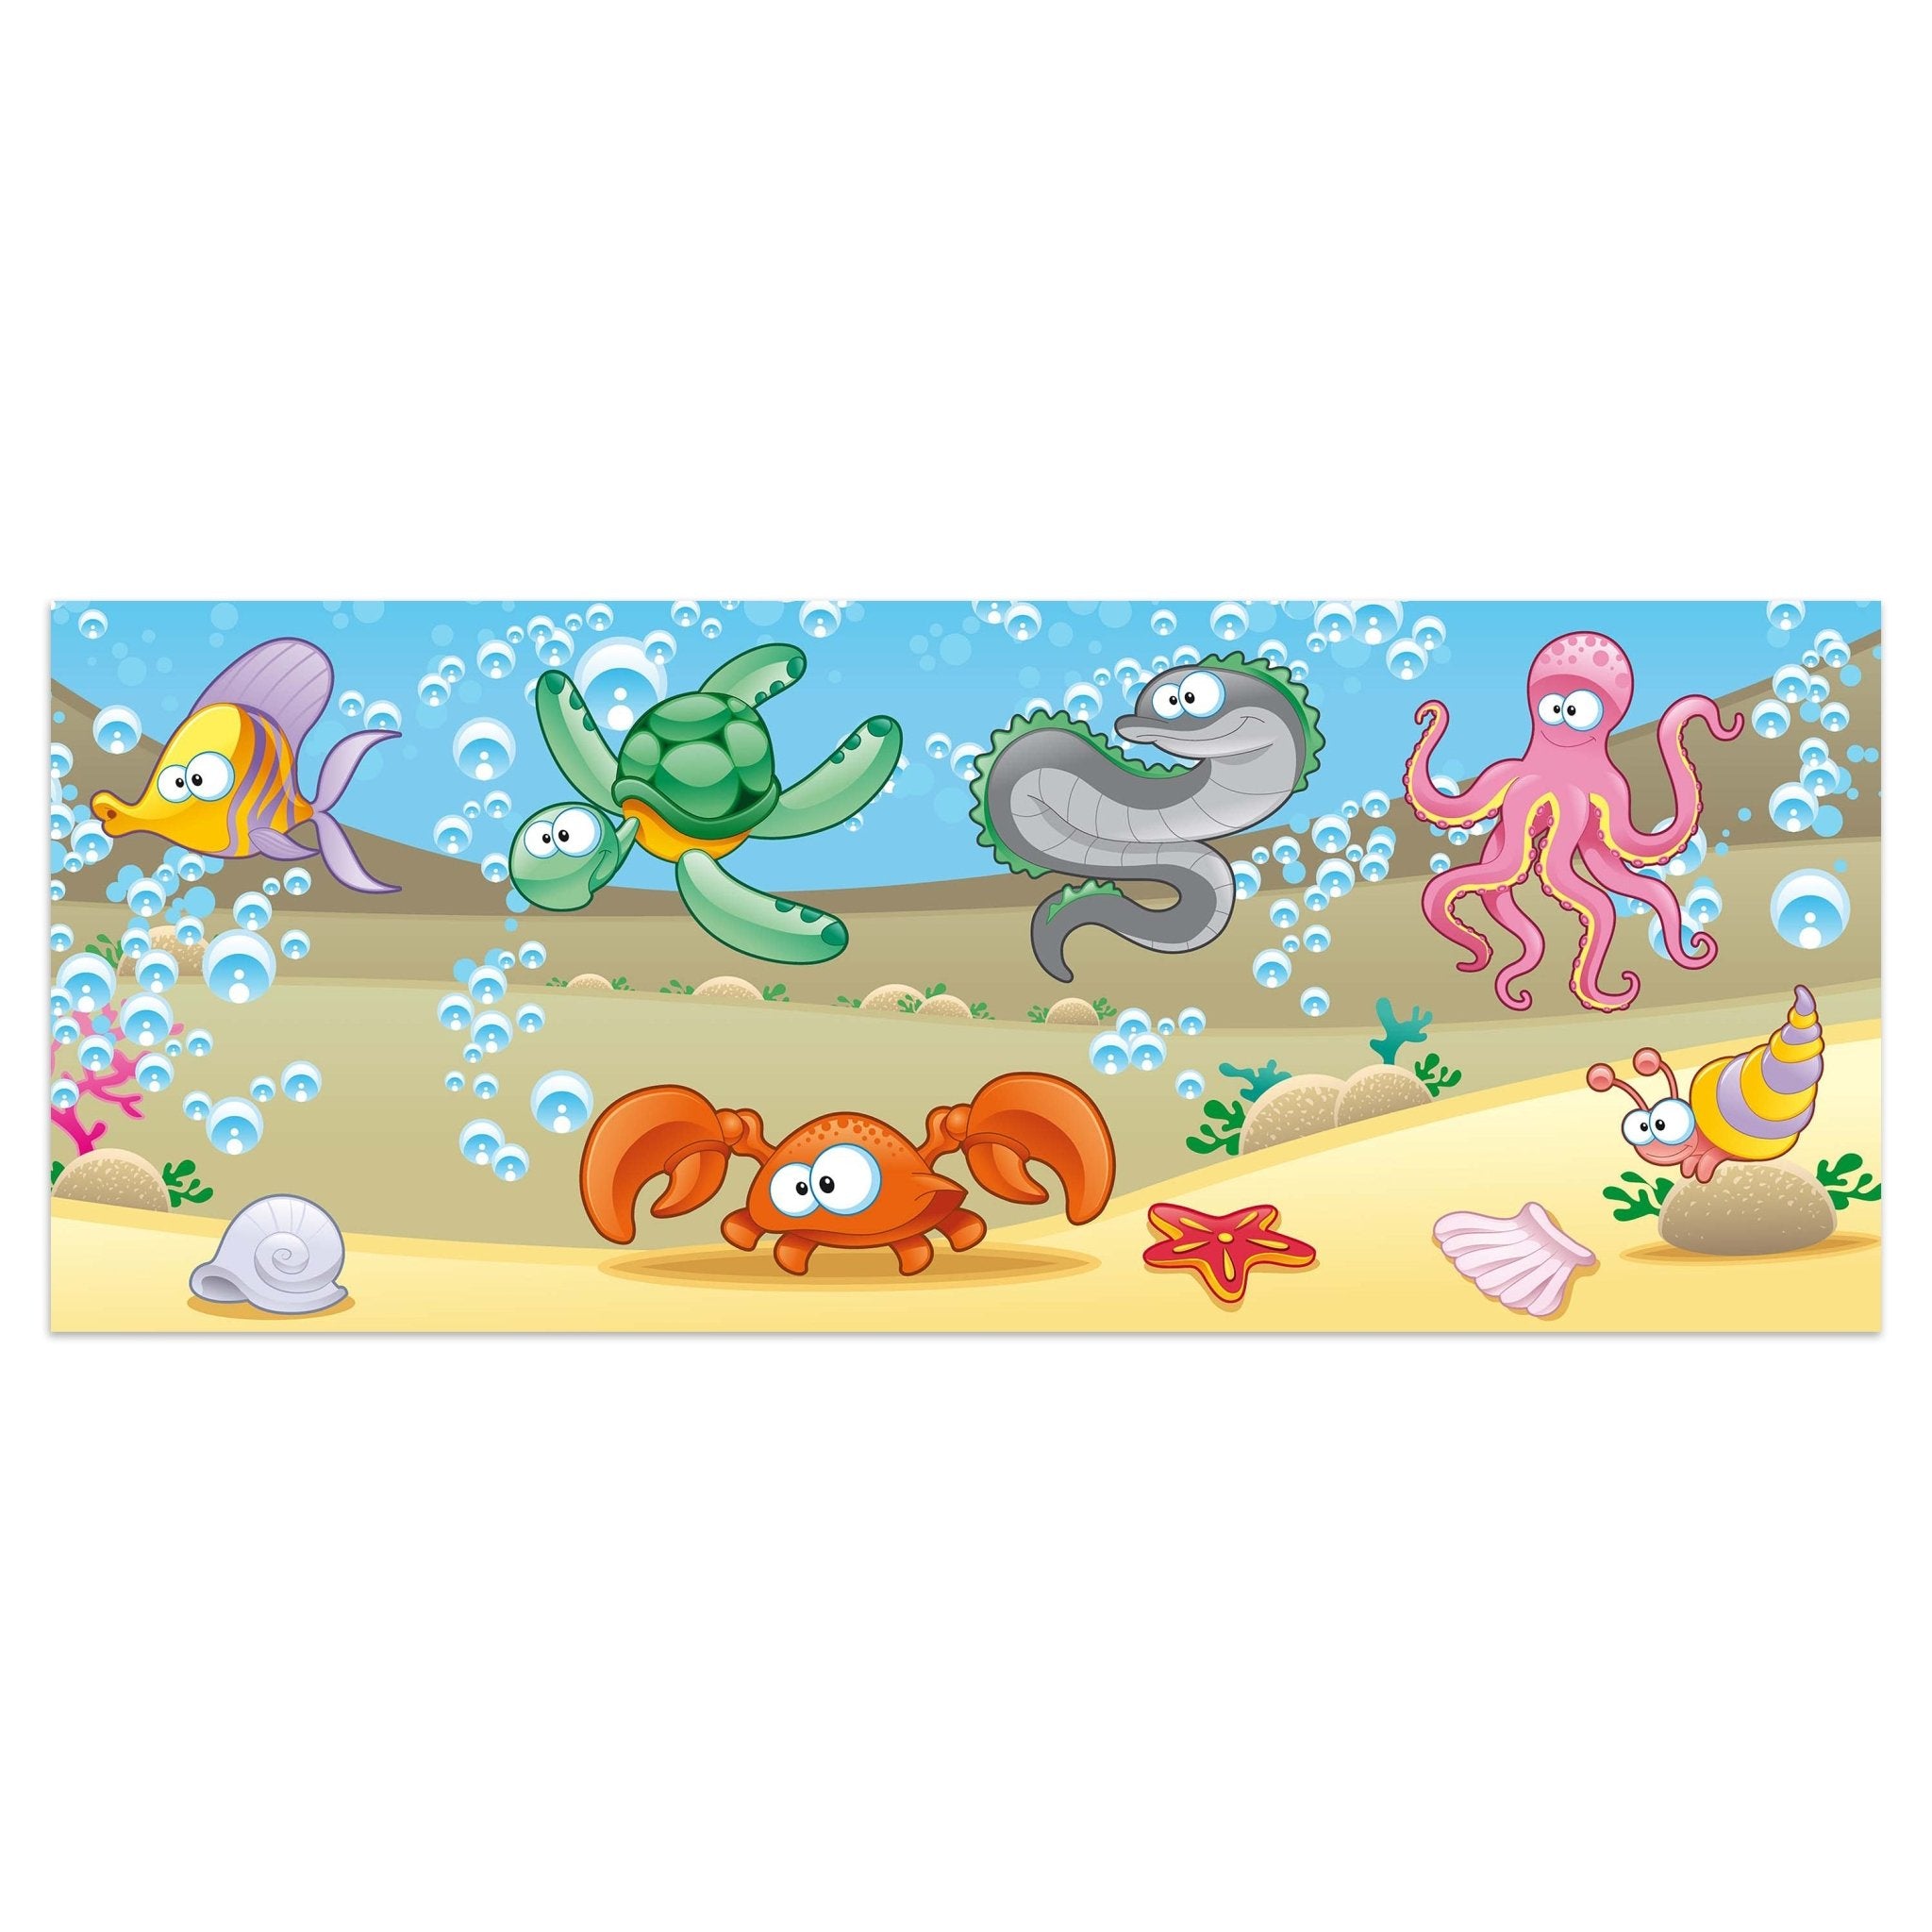 Leinwandbild Unterwassertiere Kinder M0176 kaufen - Bild 1